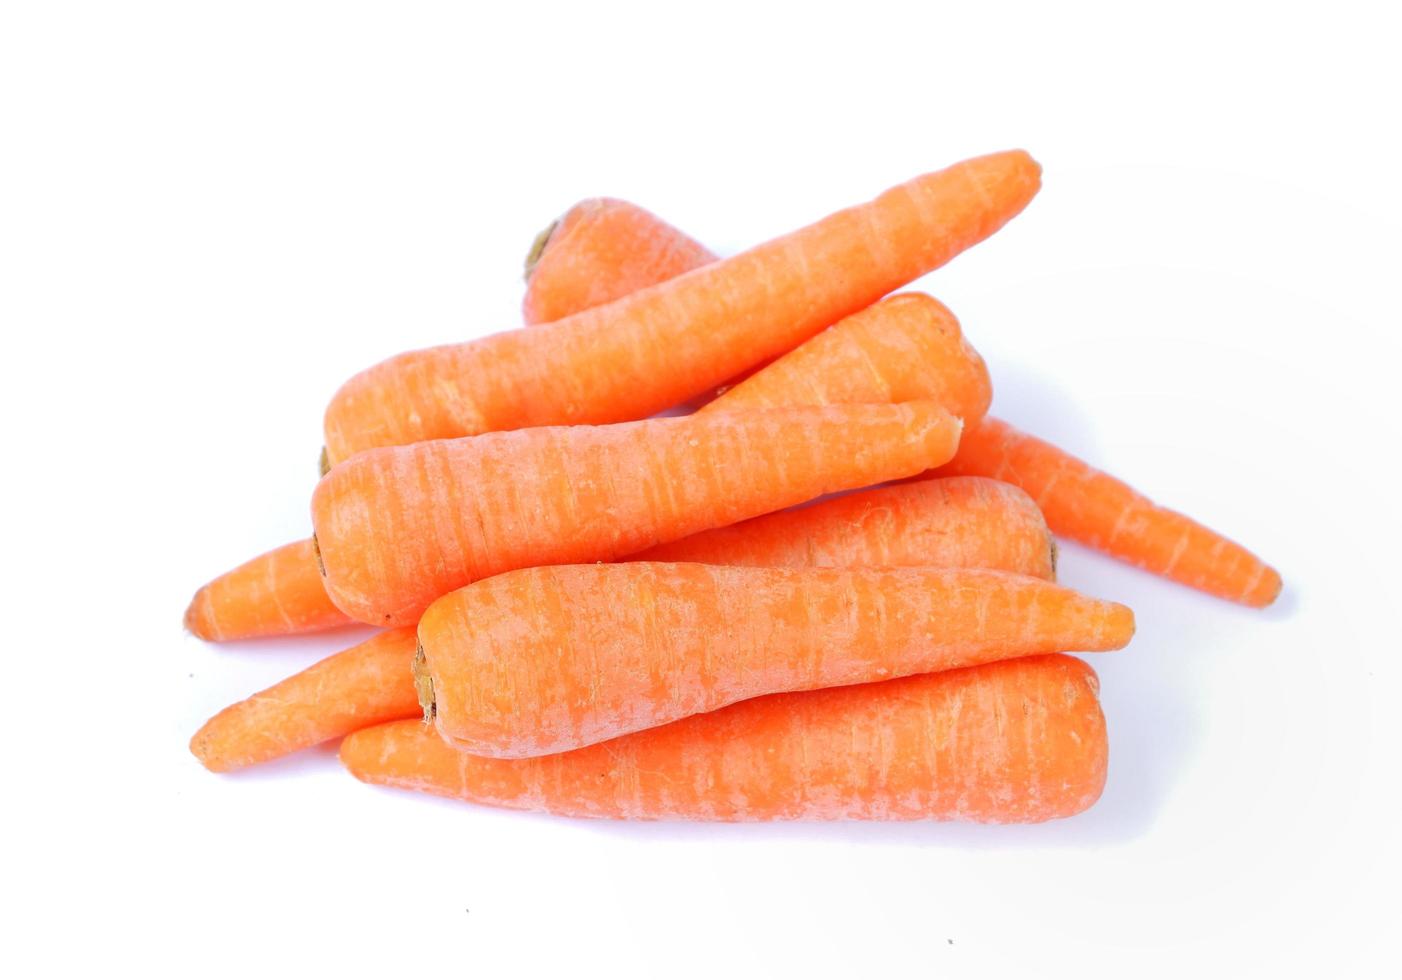 carotte isolé sur fond blanc photo